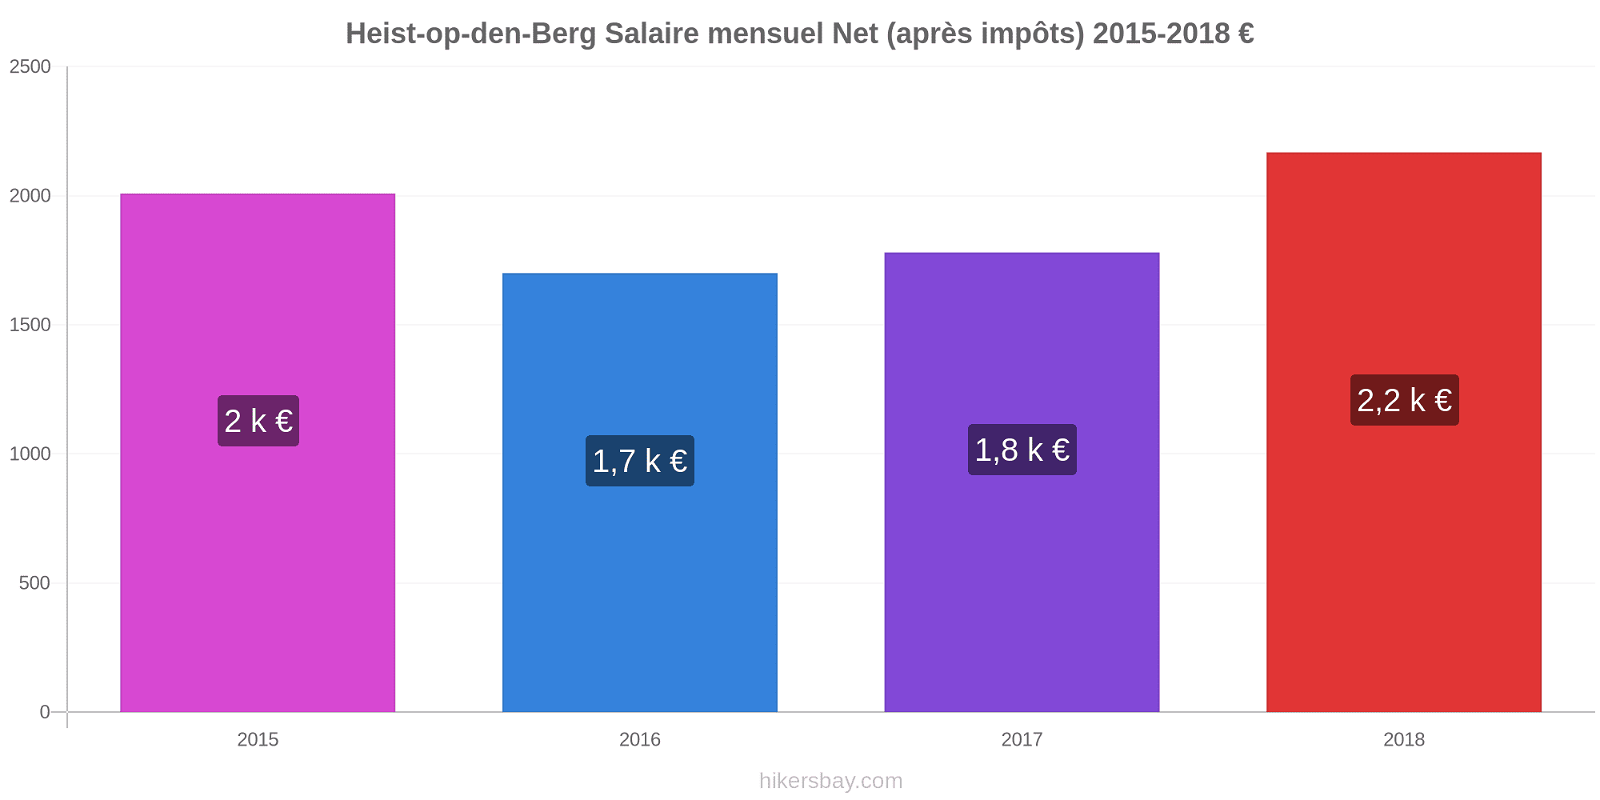 Heist-op-den-Berg changements de prix Salaire mensuel Net (après impôts) hikersbay.com